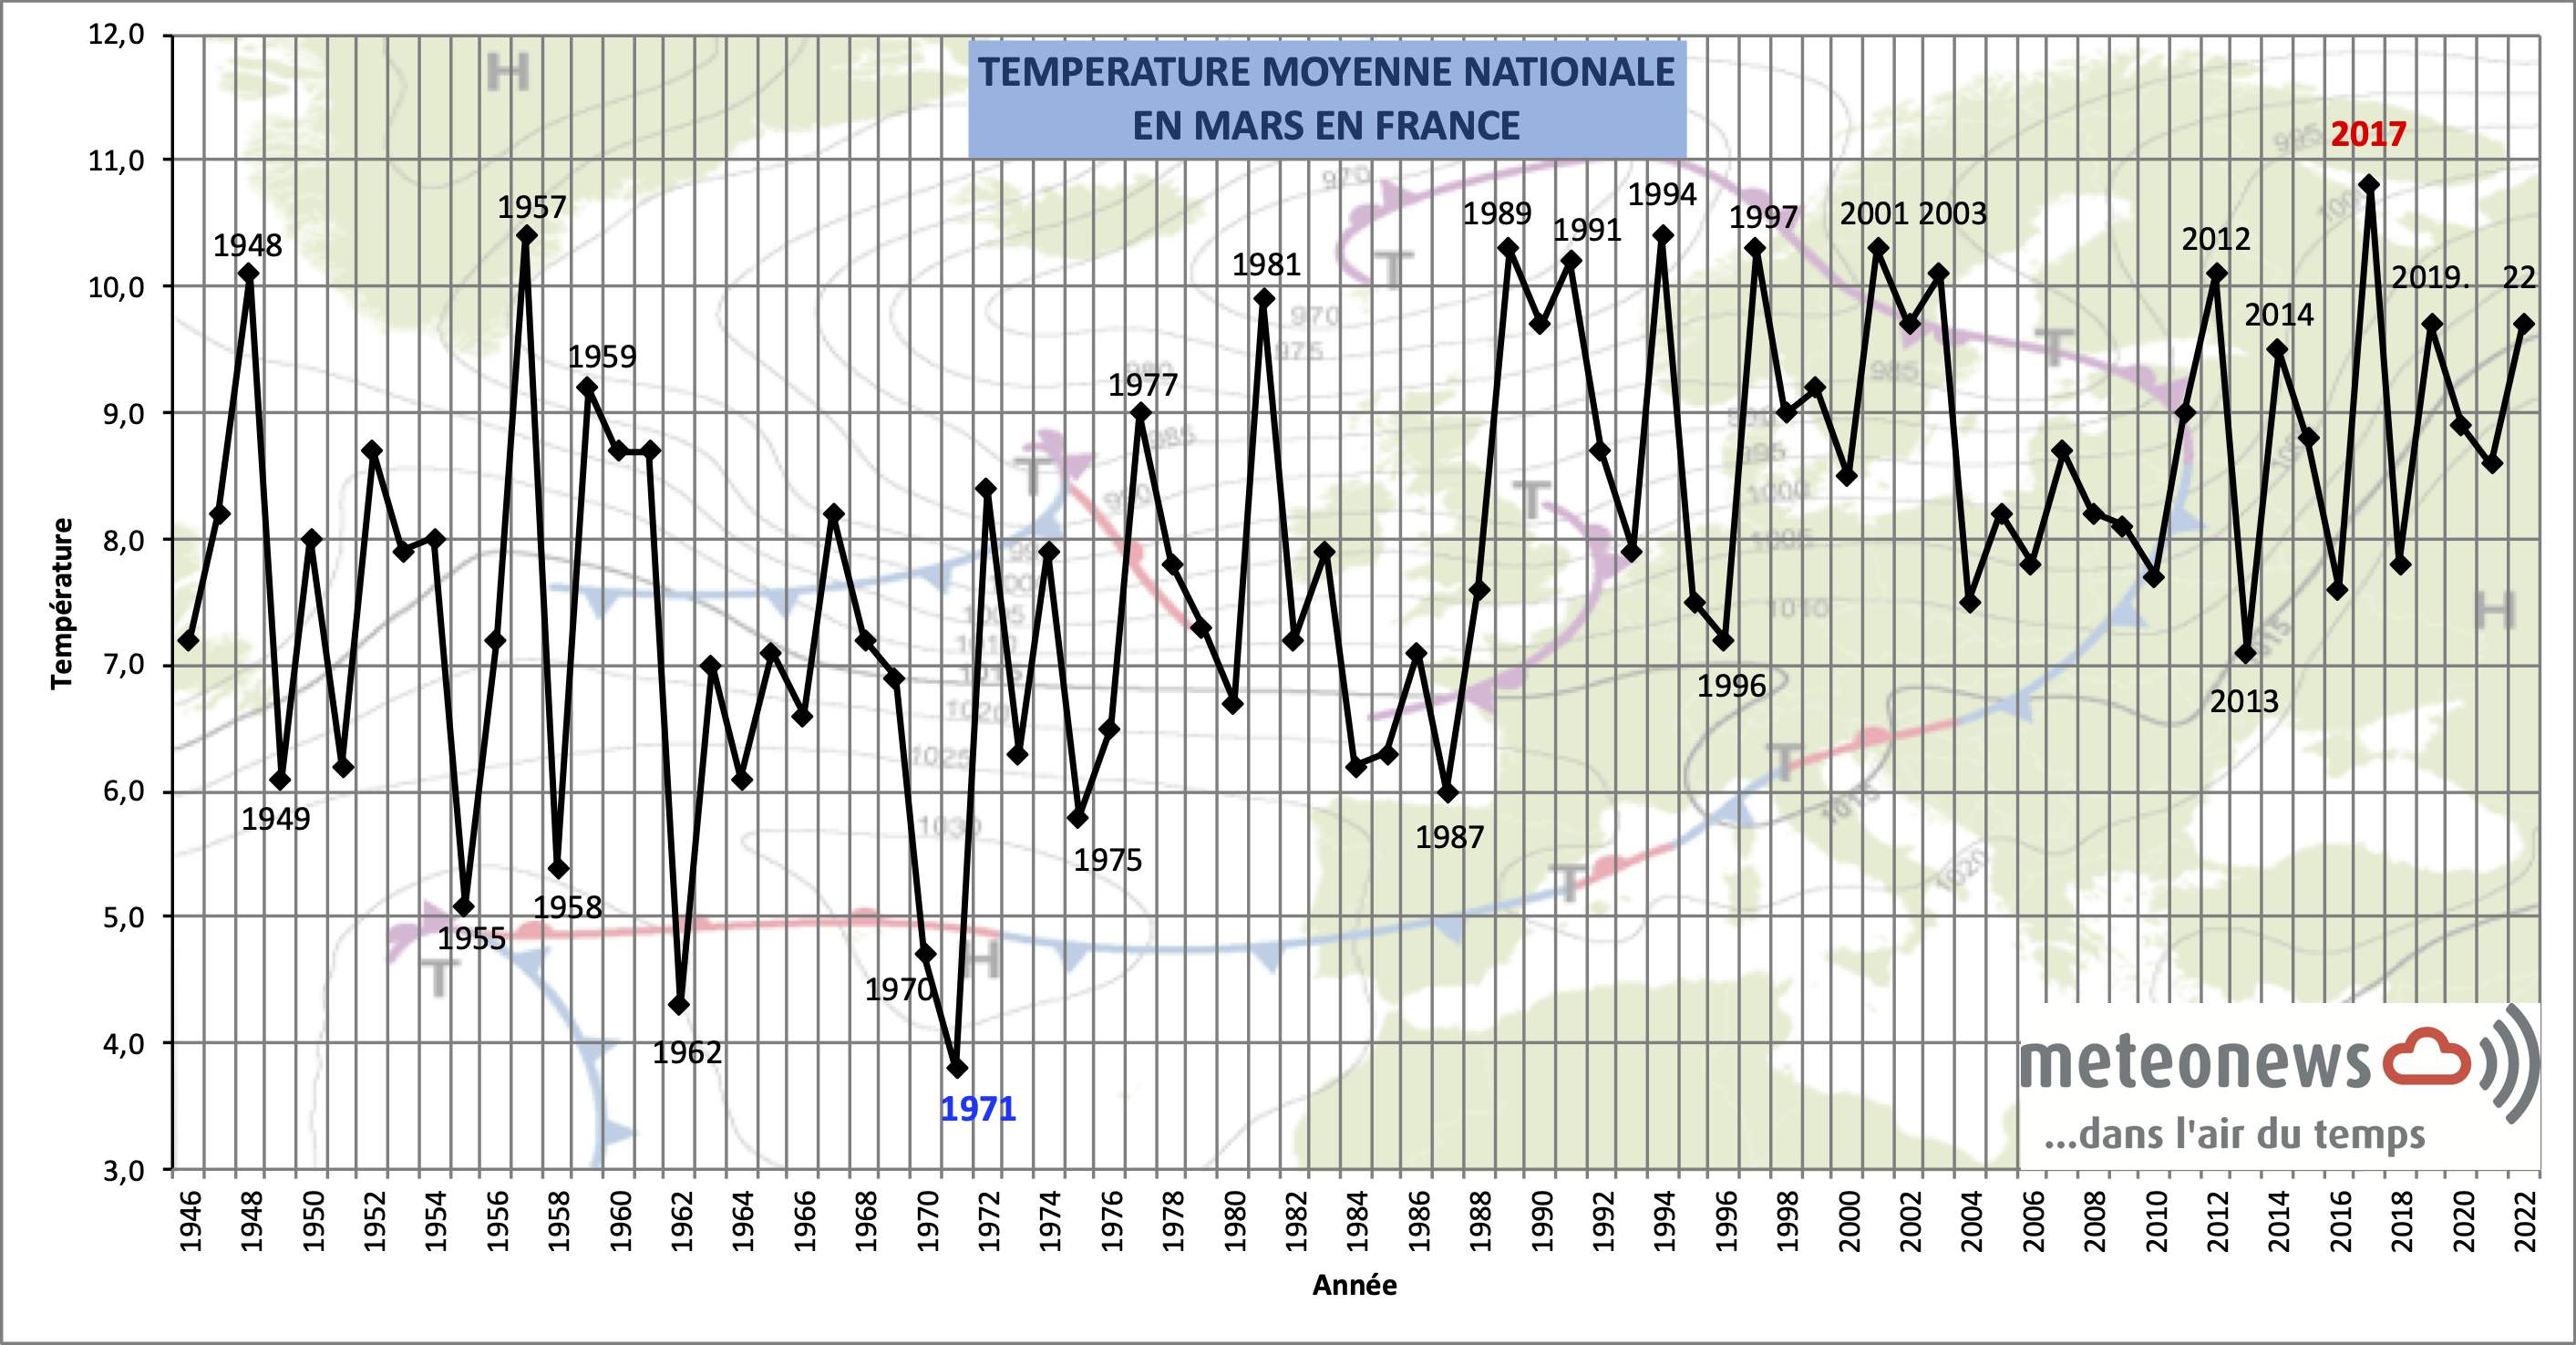 Fig. 1: Température moyenne nationale en mars